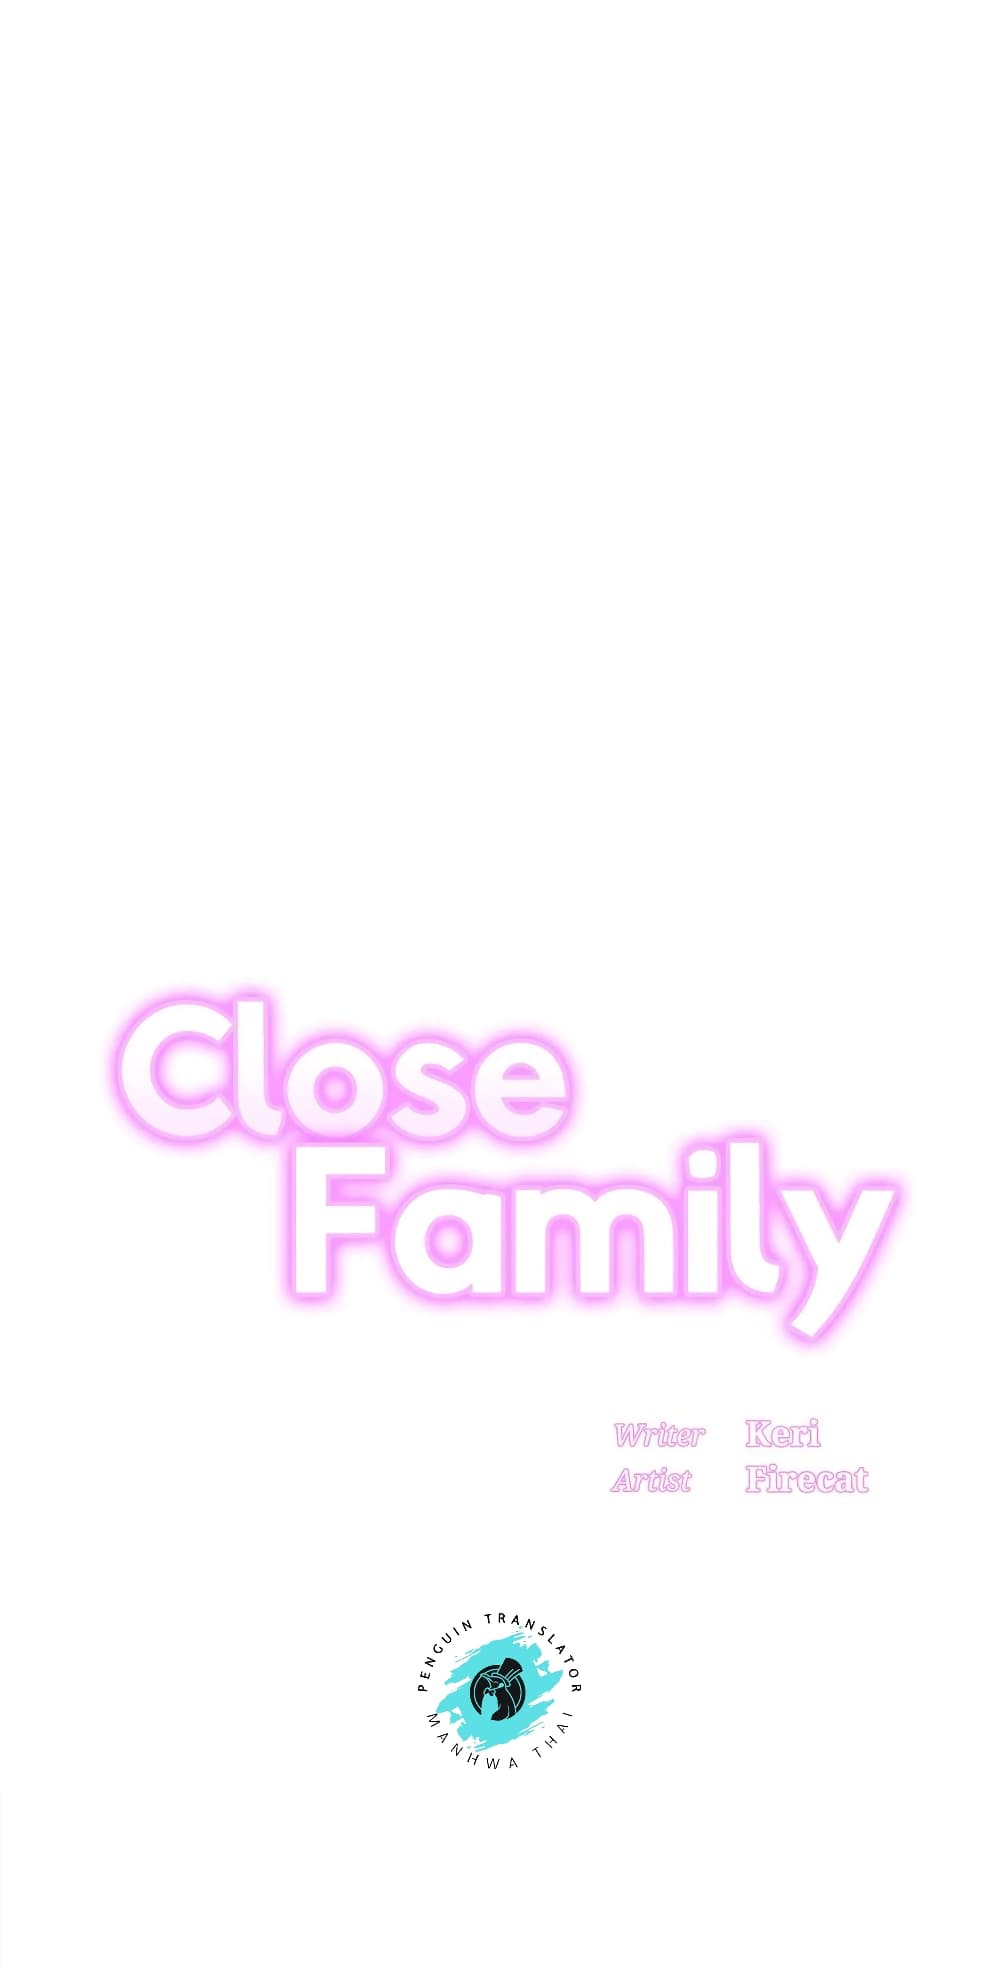 Close Family 55 01